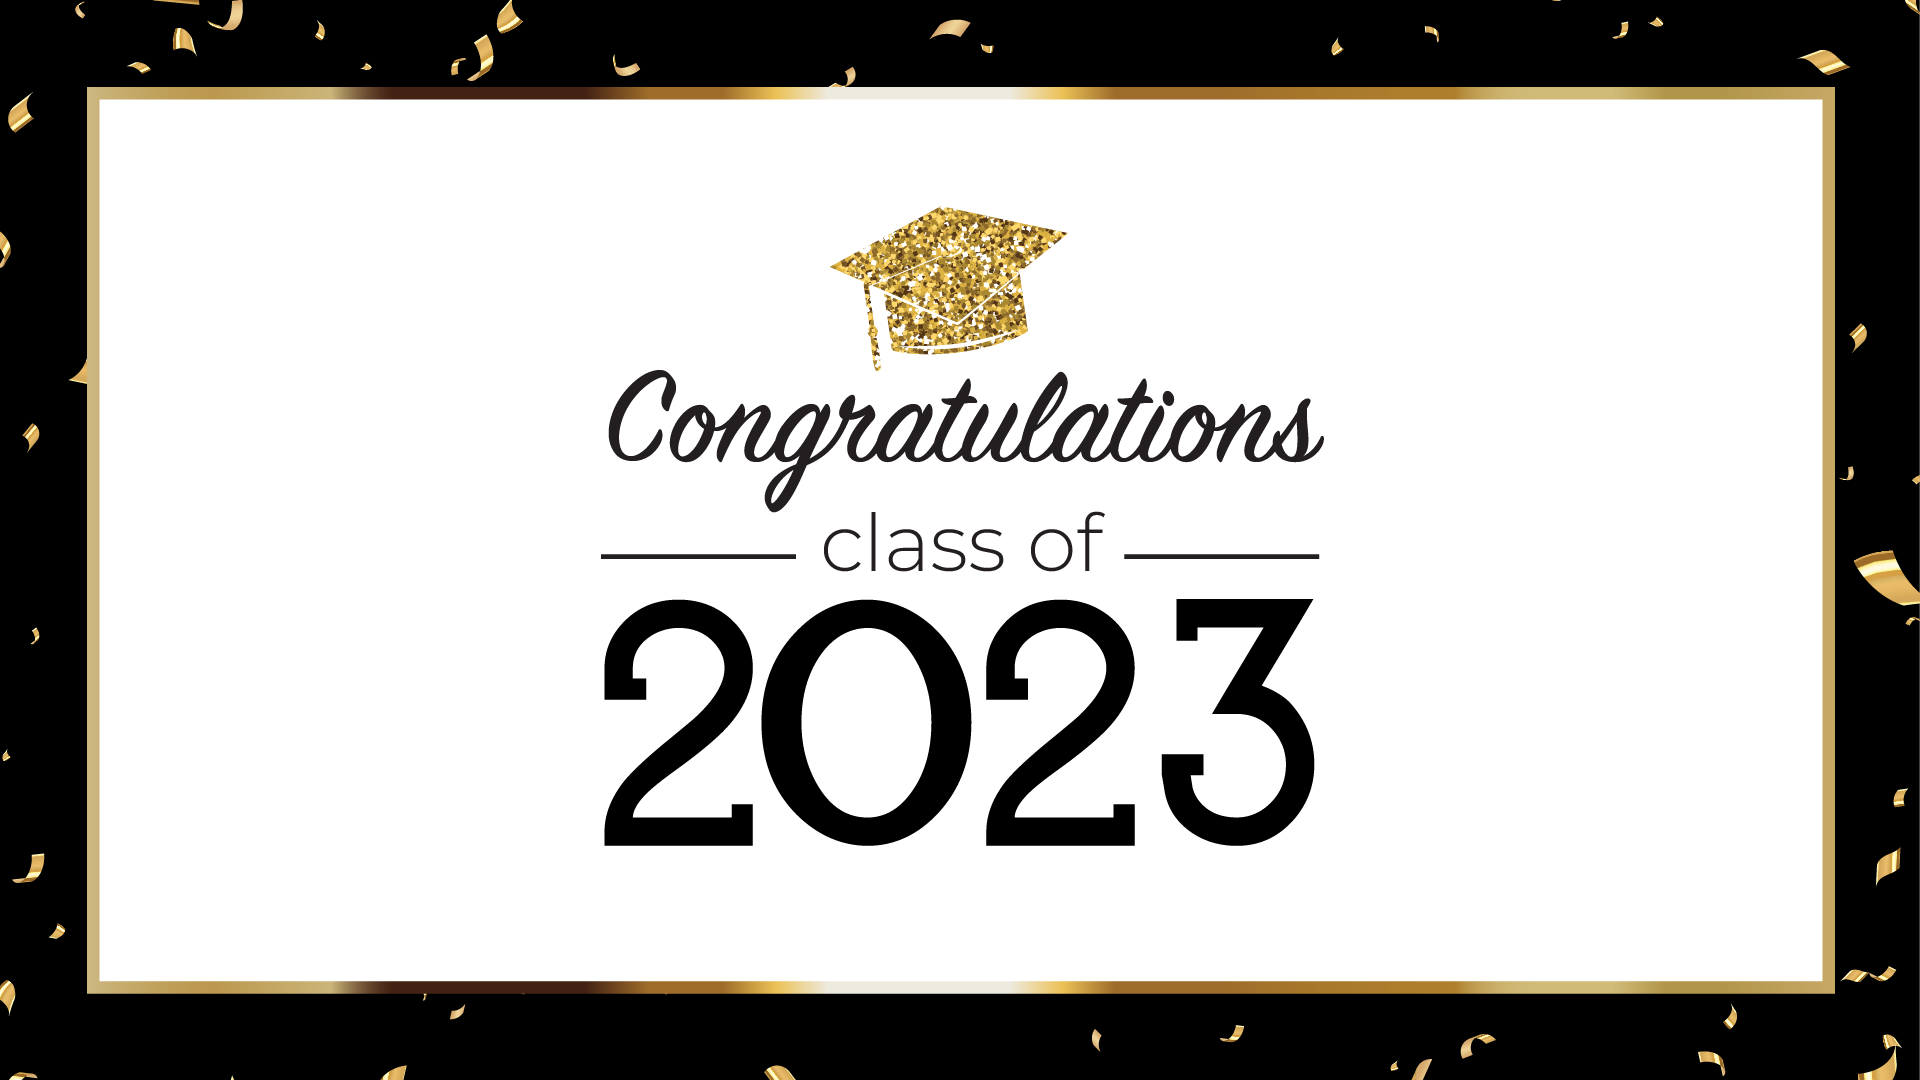 Congratulations class of 2023 (gold confetti)